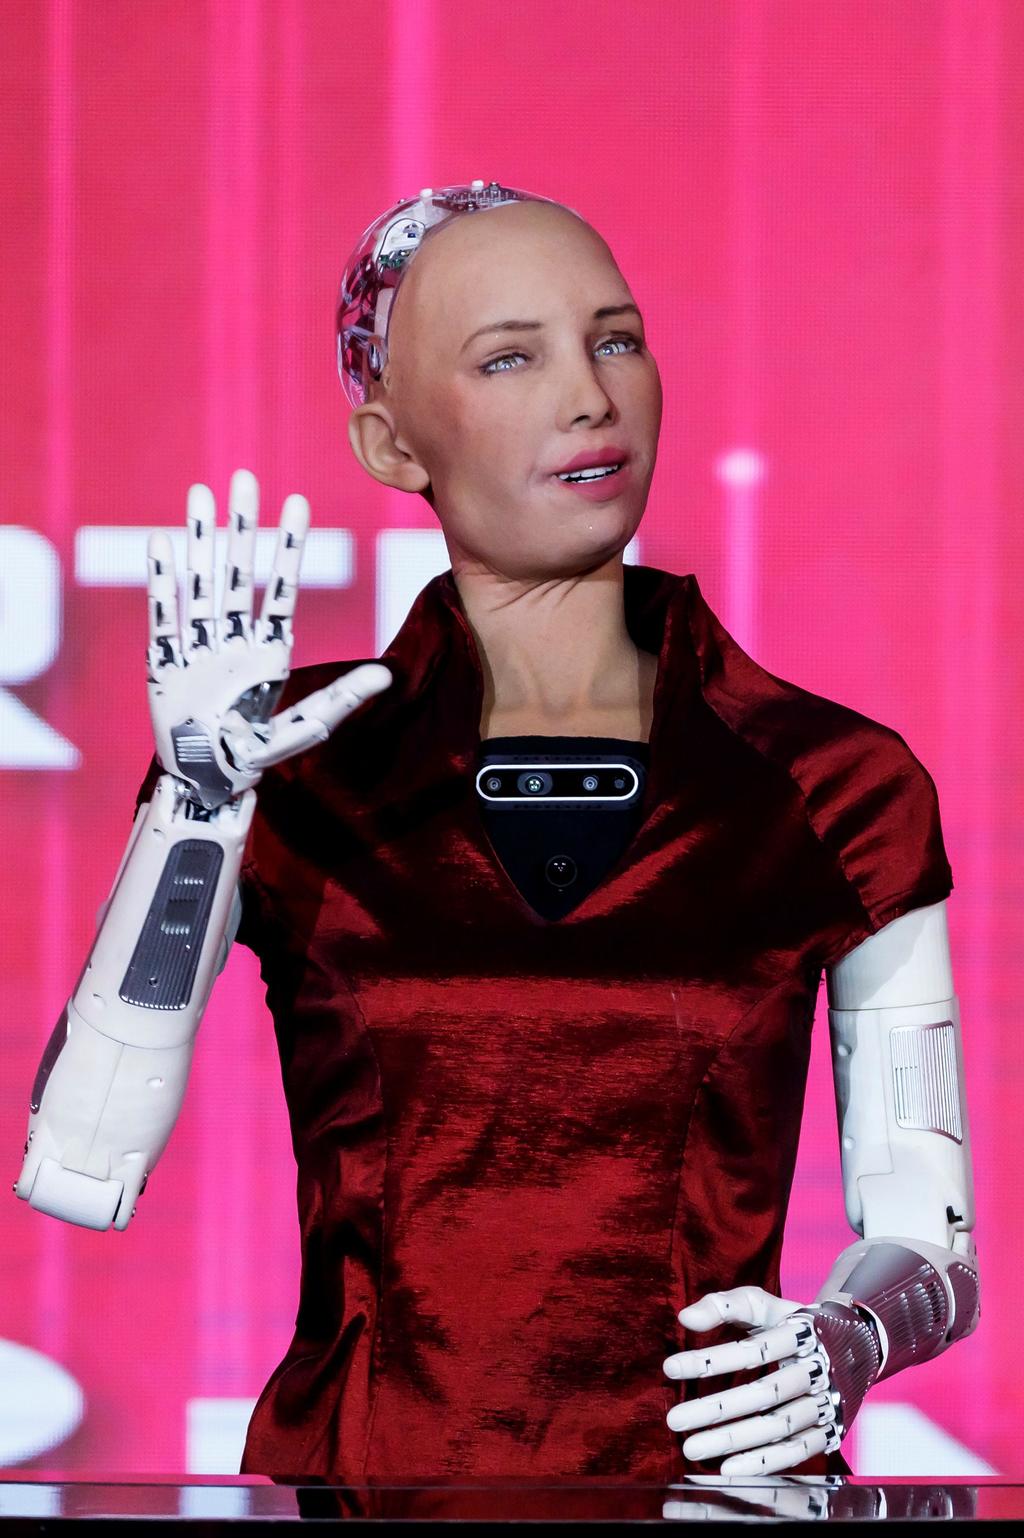 La robot Sophia fue creada en Hong Kong en 2015 luego de 30 años de trabajo de su creador. (AGENCIAS)